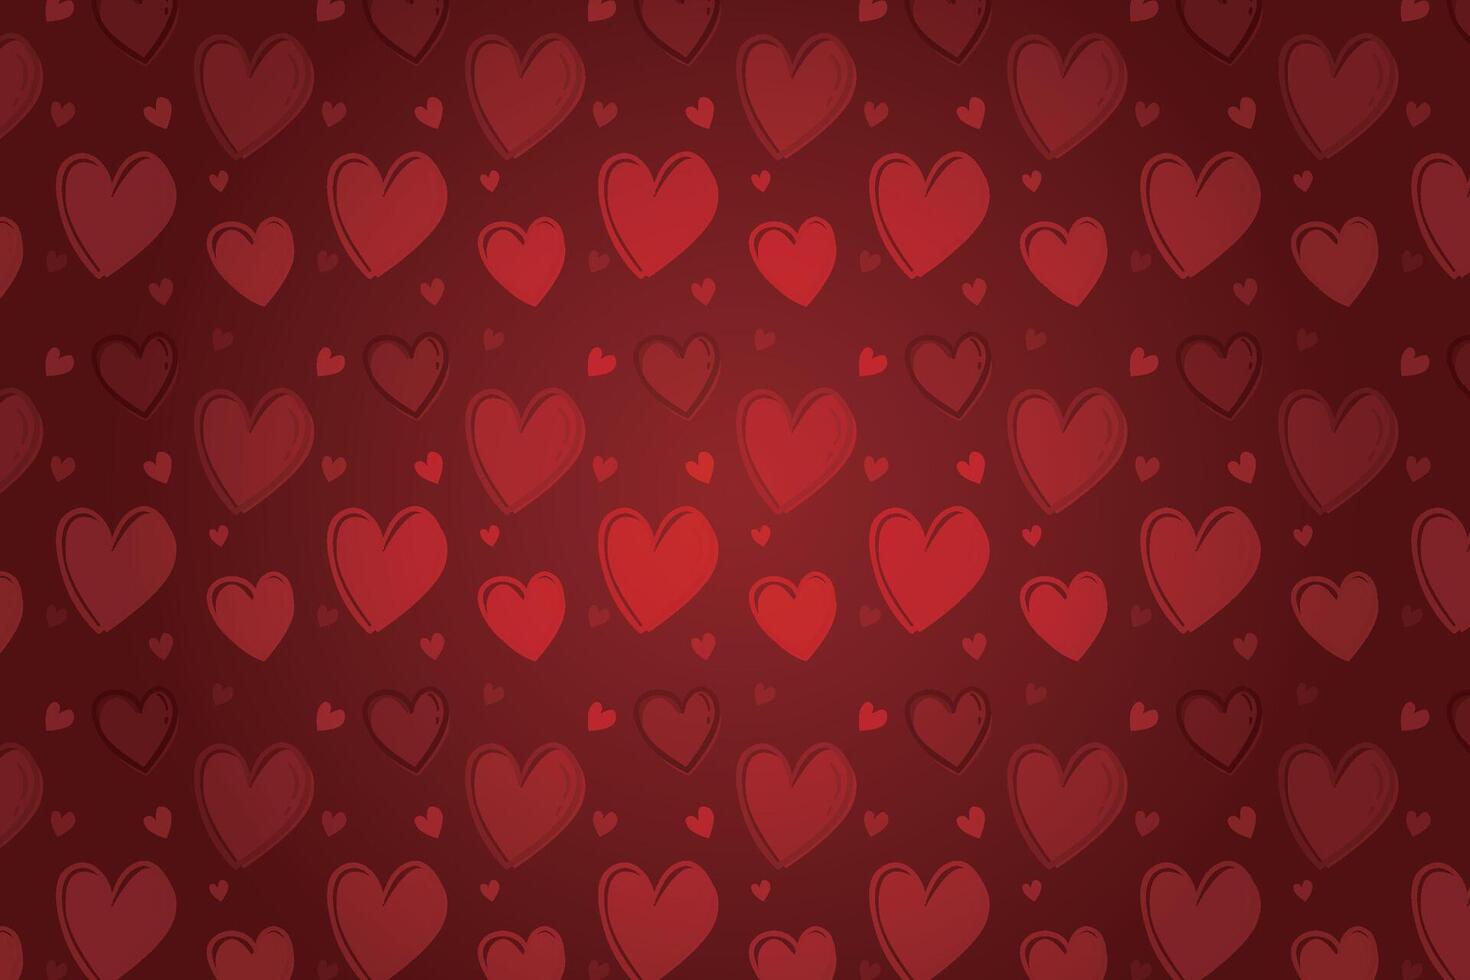 vektor kärlek hjärta mönster, vektor hand dragen hjärtans dag mönster, hjärtans dag bakgrund.